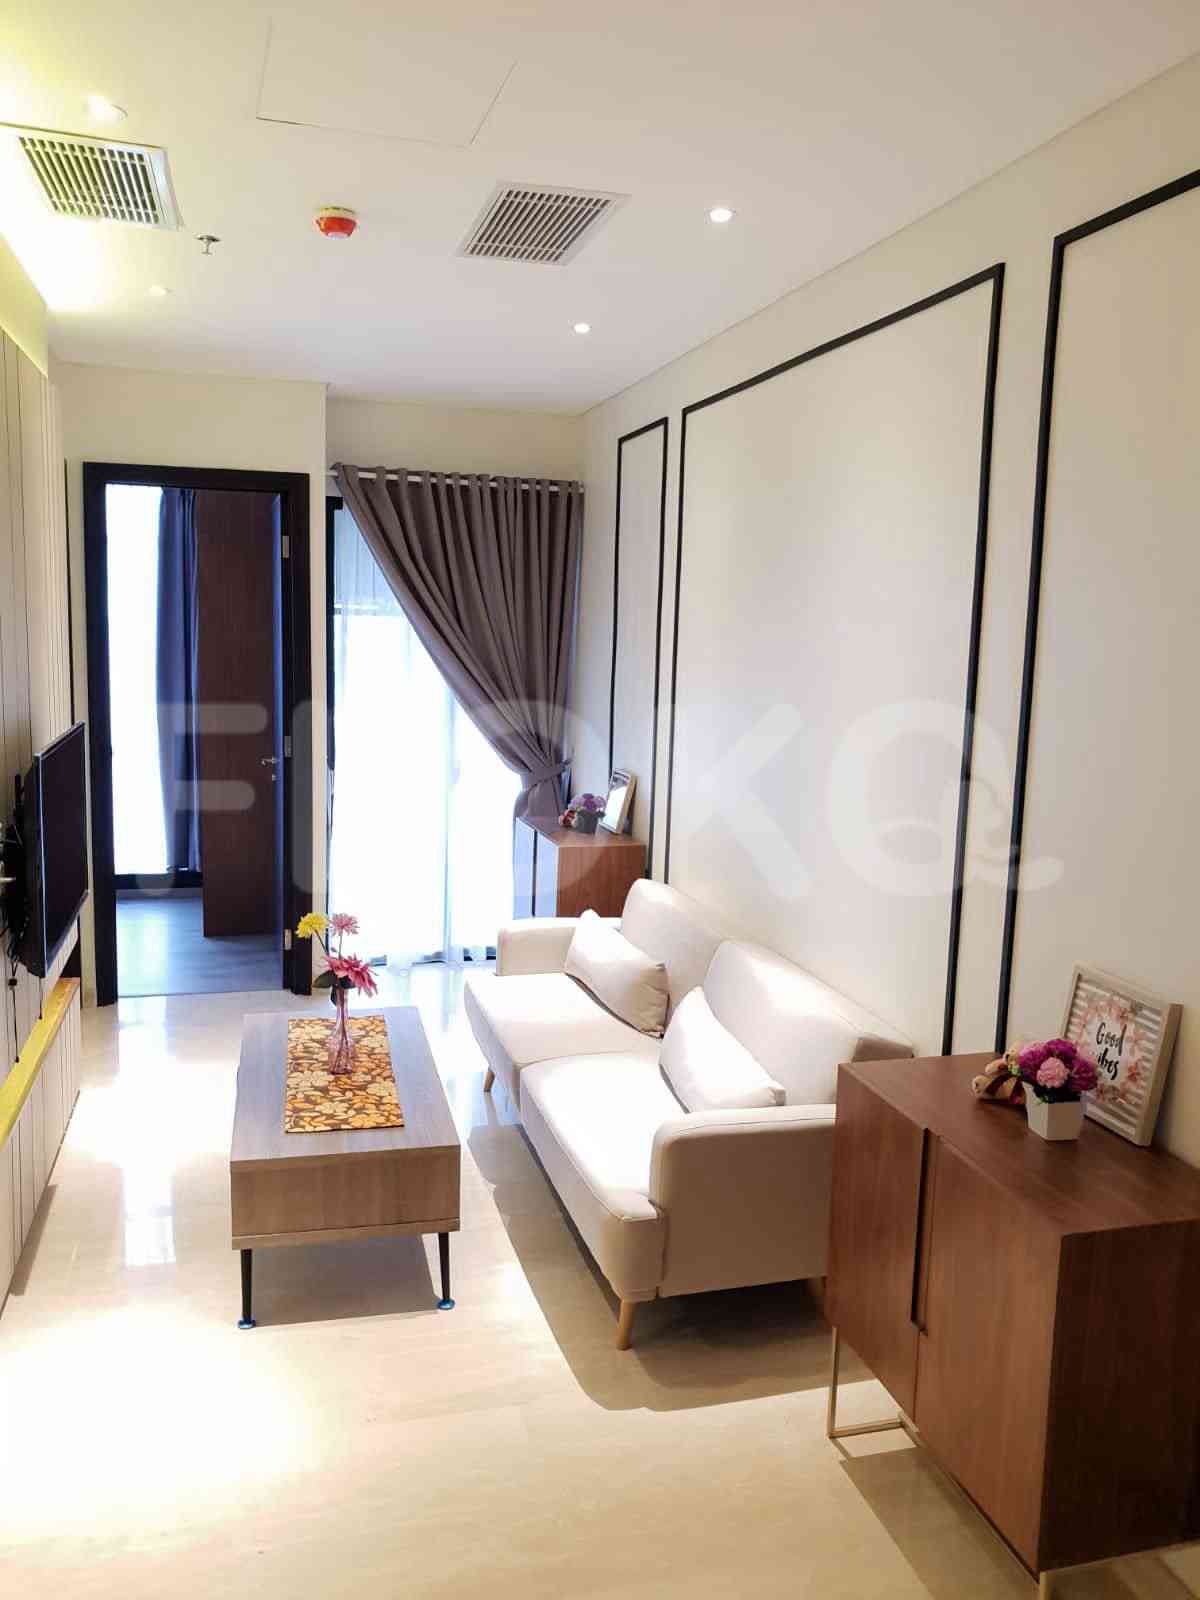 2 Bedroom on 6th Floor for Rent in Sudirman Suites Jakarta - fsud5c 4